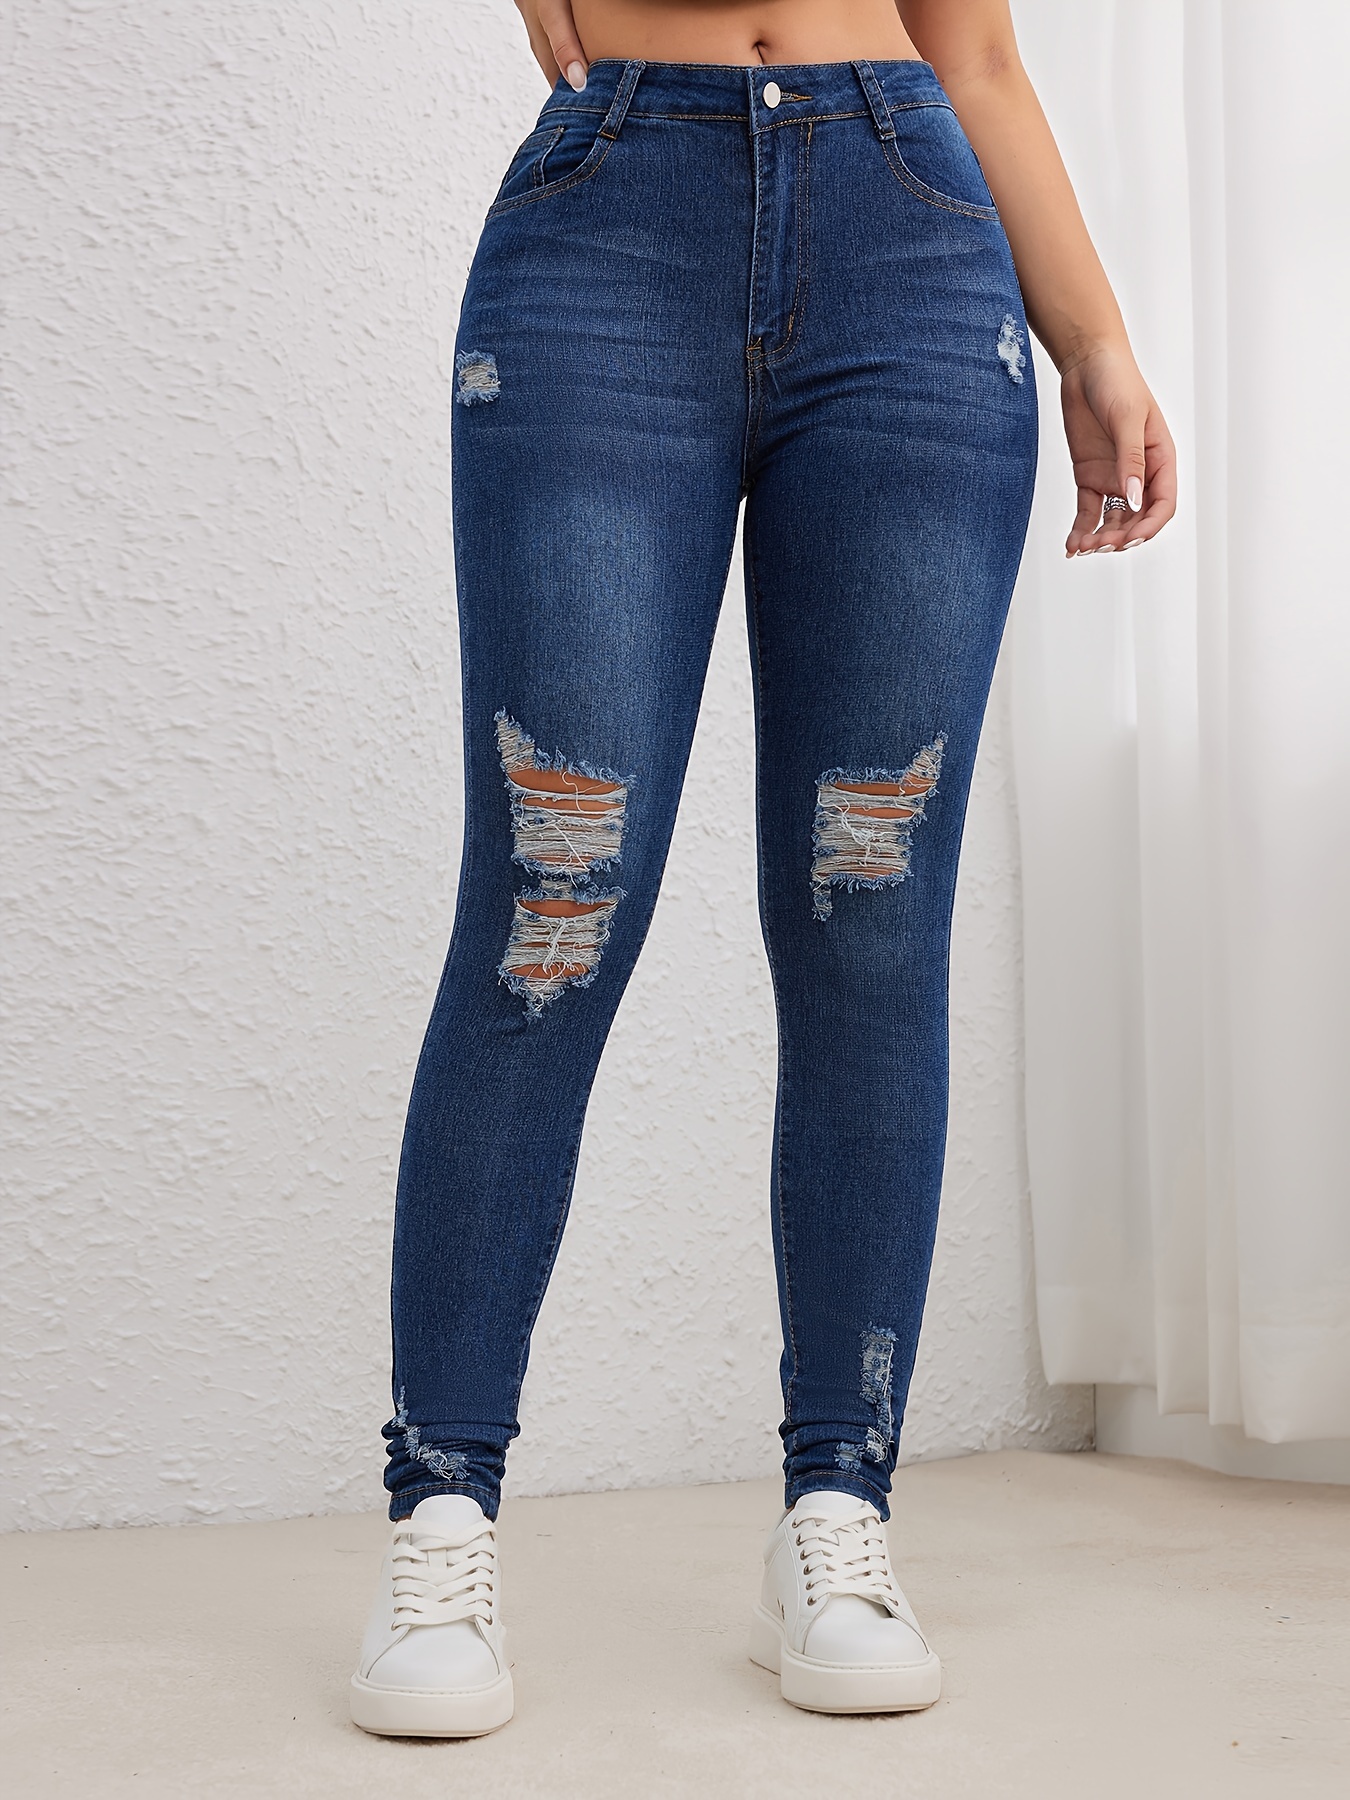 Pantalones ajustados de cintura alta para mujer, Jeans elásticos